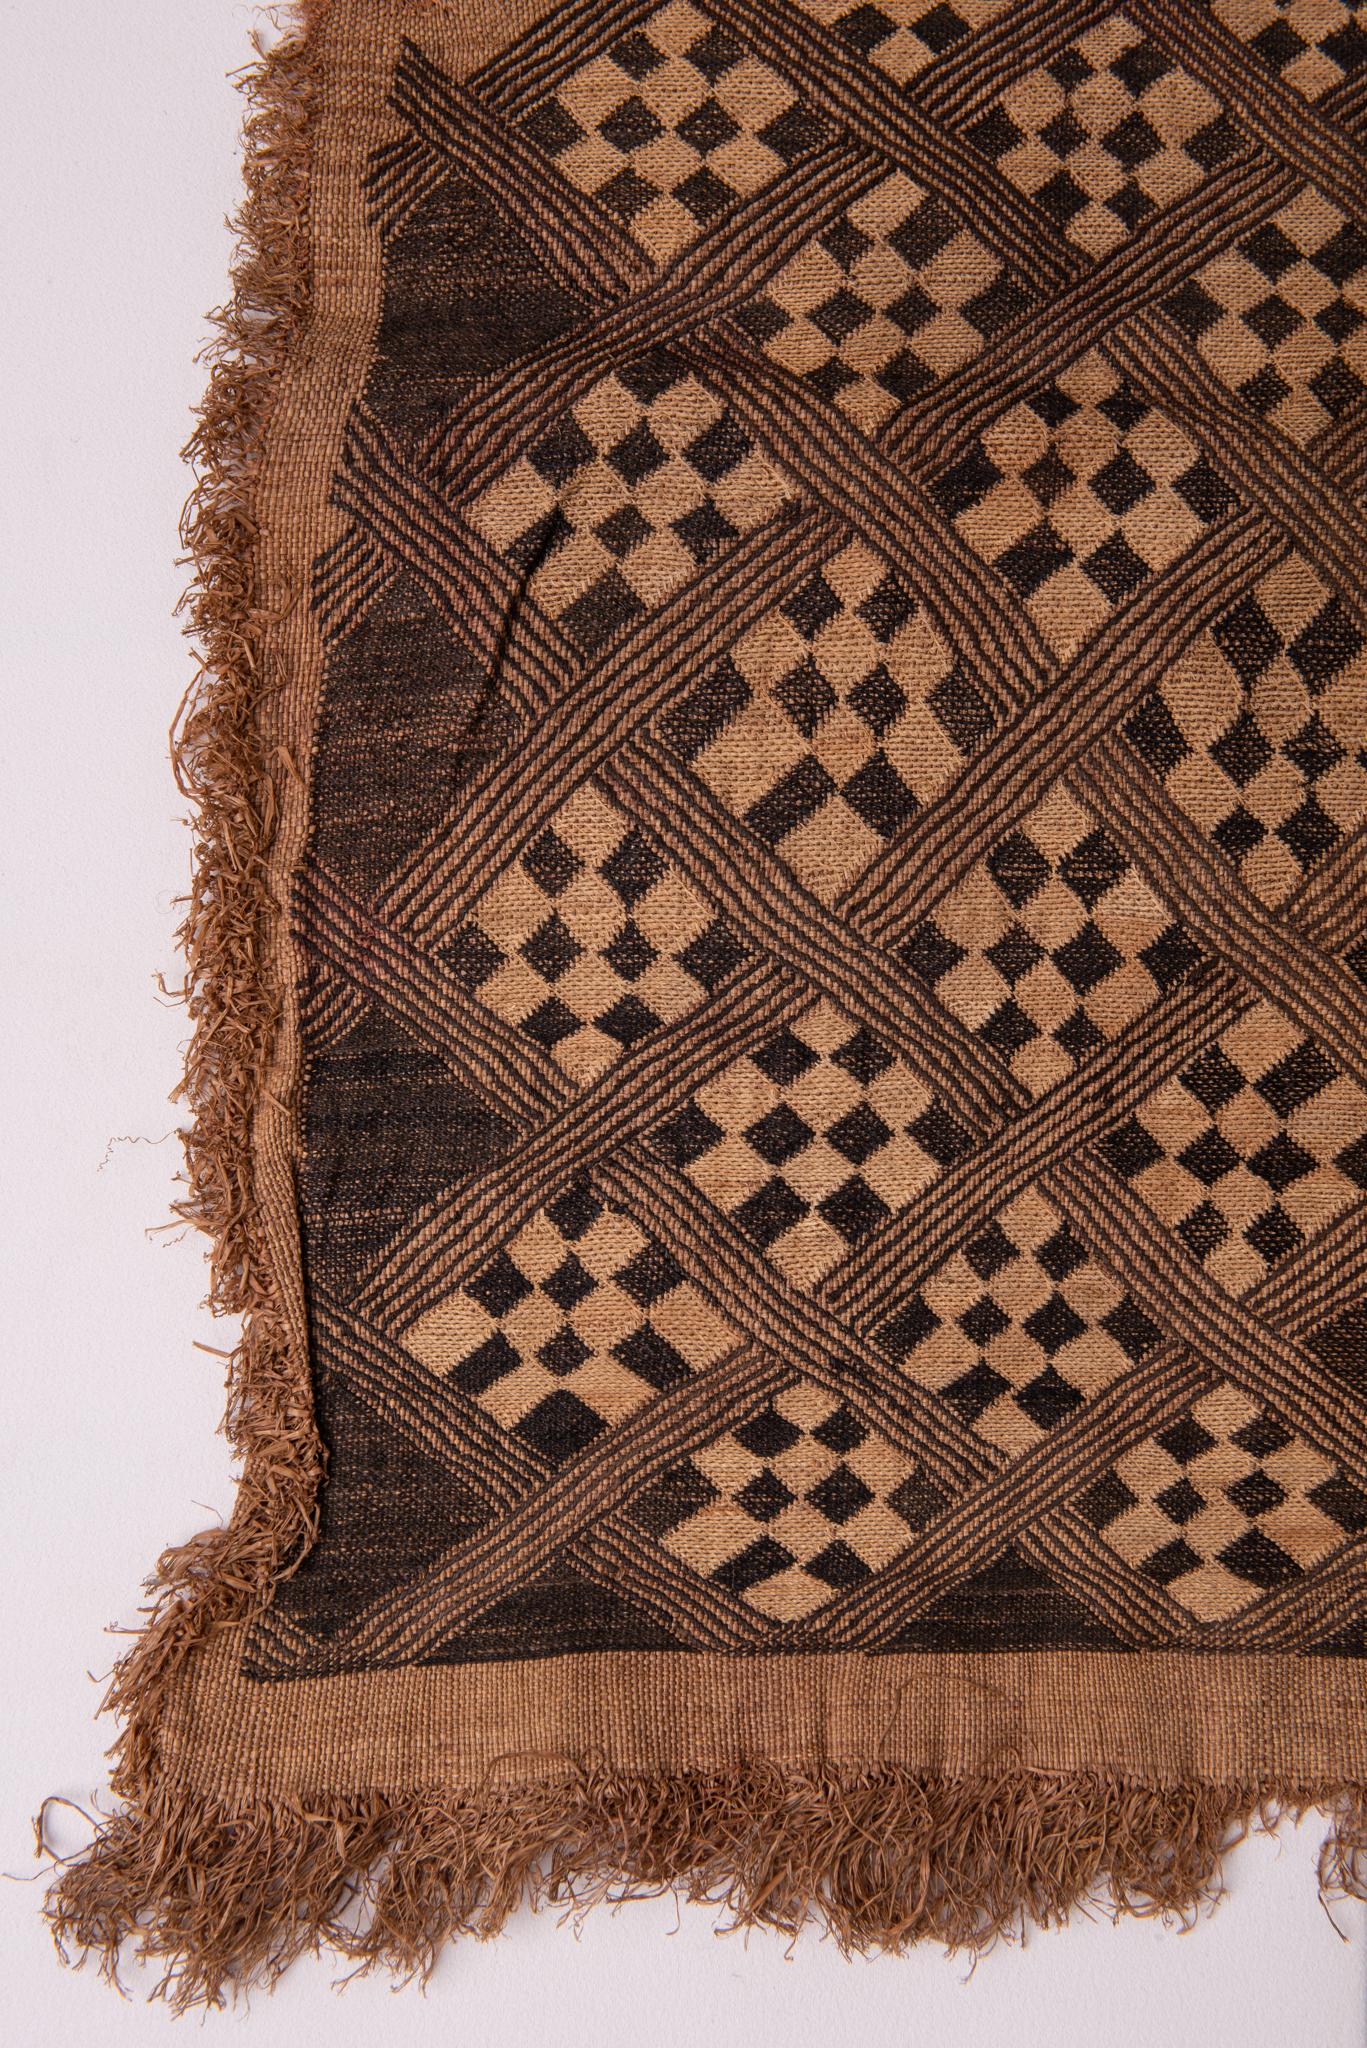 Hand-Woven African Showa Kuba Vintage Textile Panel